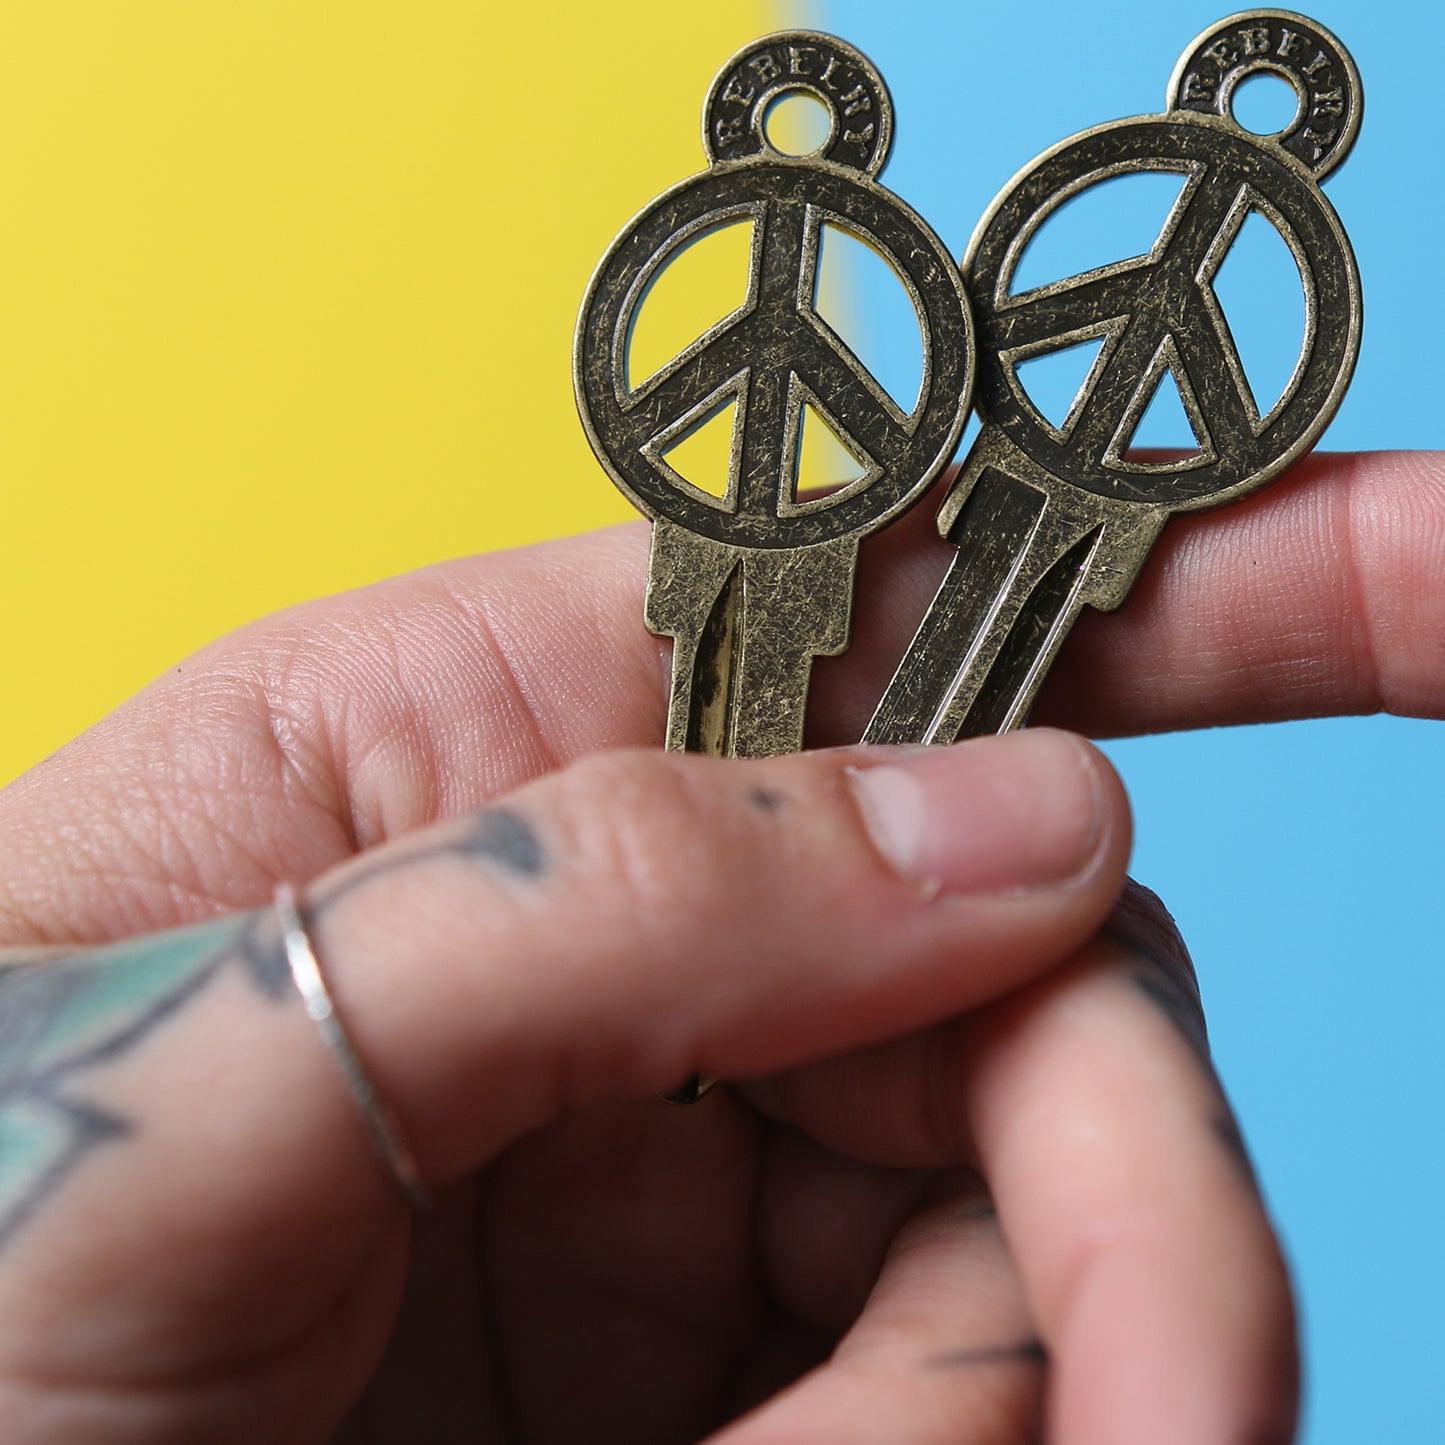 Peace Key